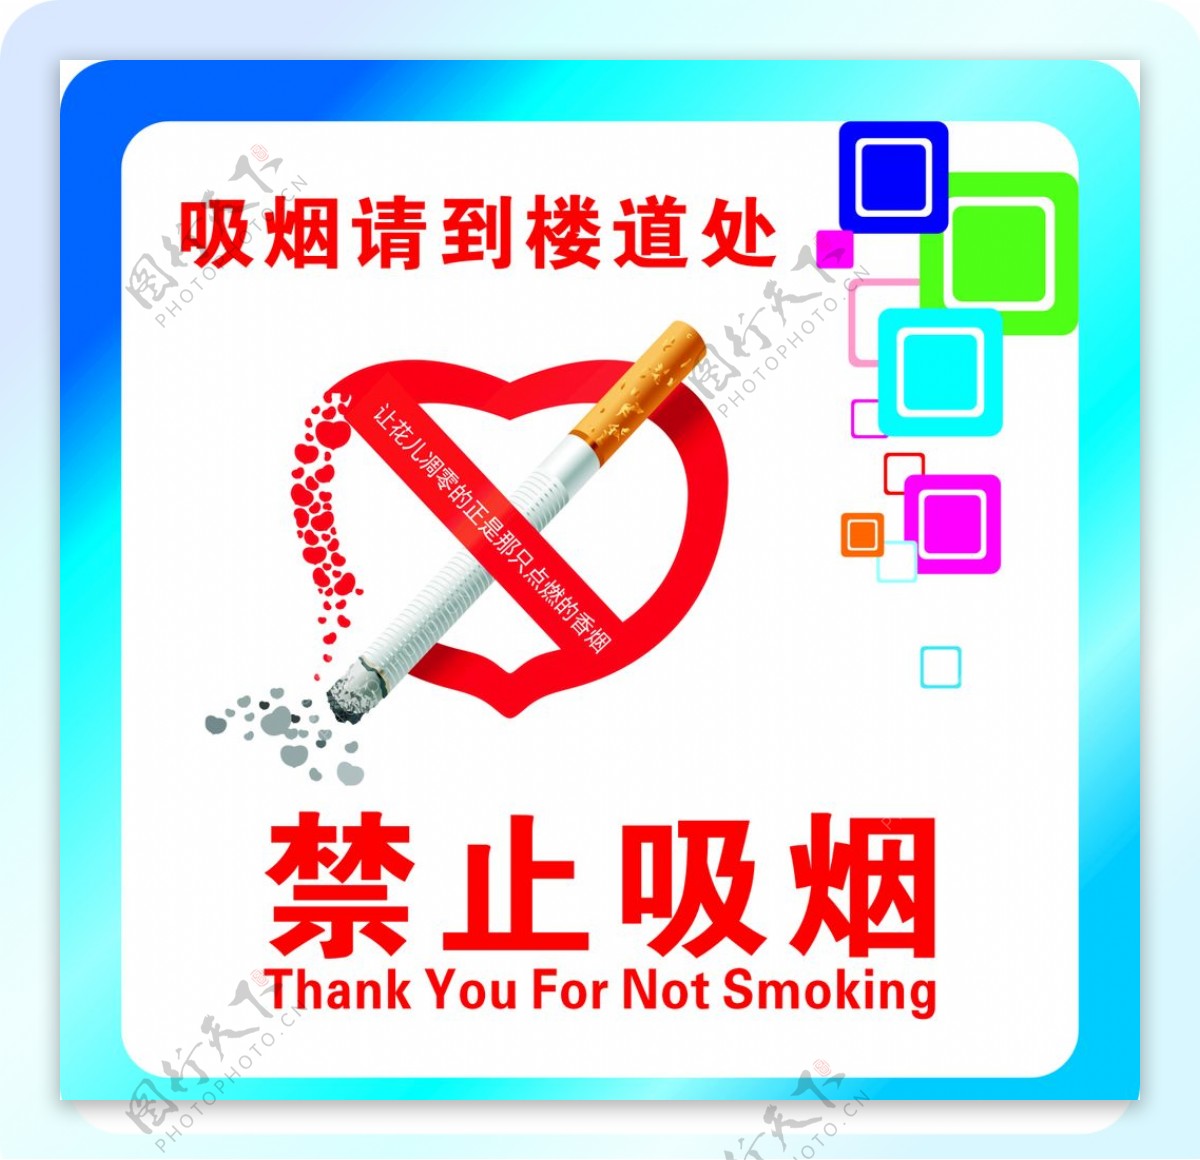 禁止吸烟标志